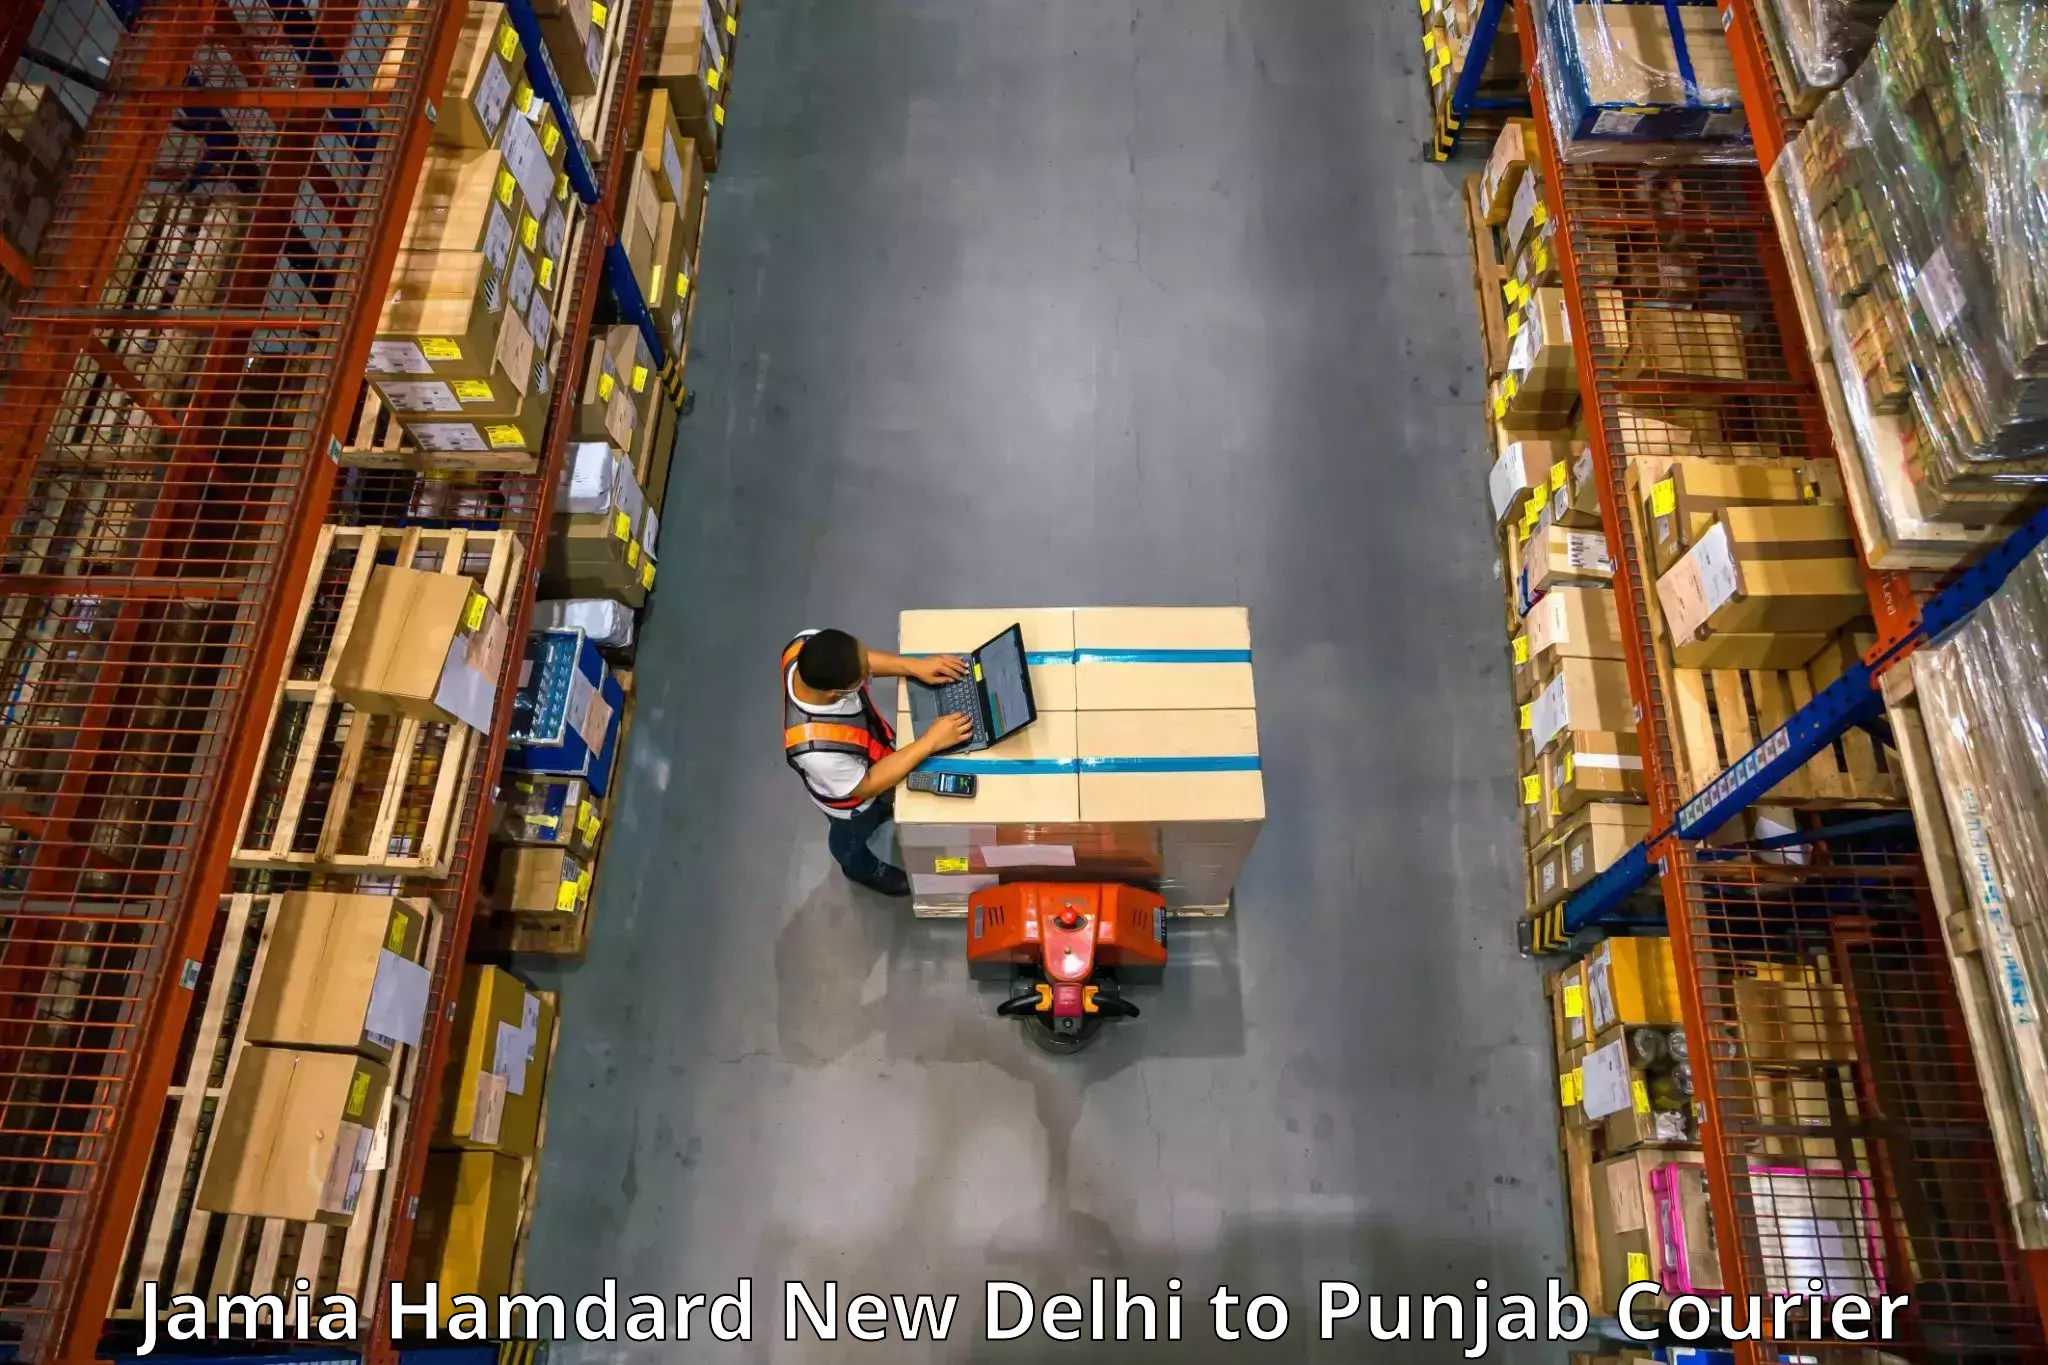 Furniture transport services Jamia Hamdard New Delhi to Patti Tarn Tara